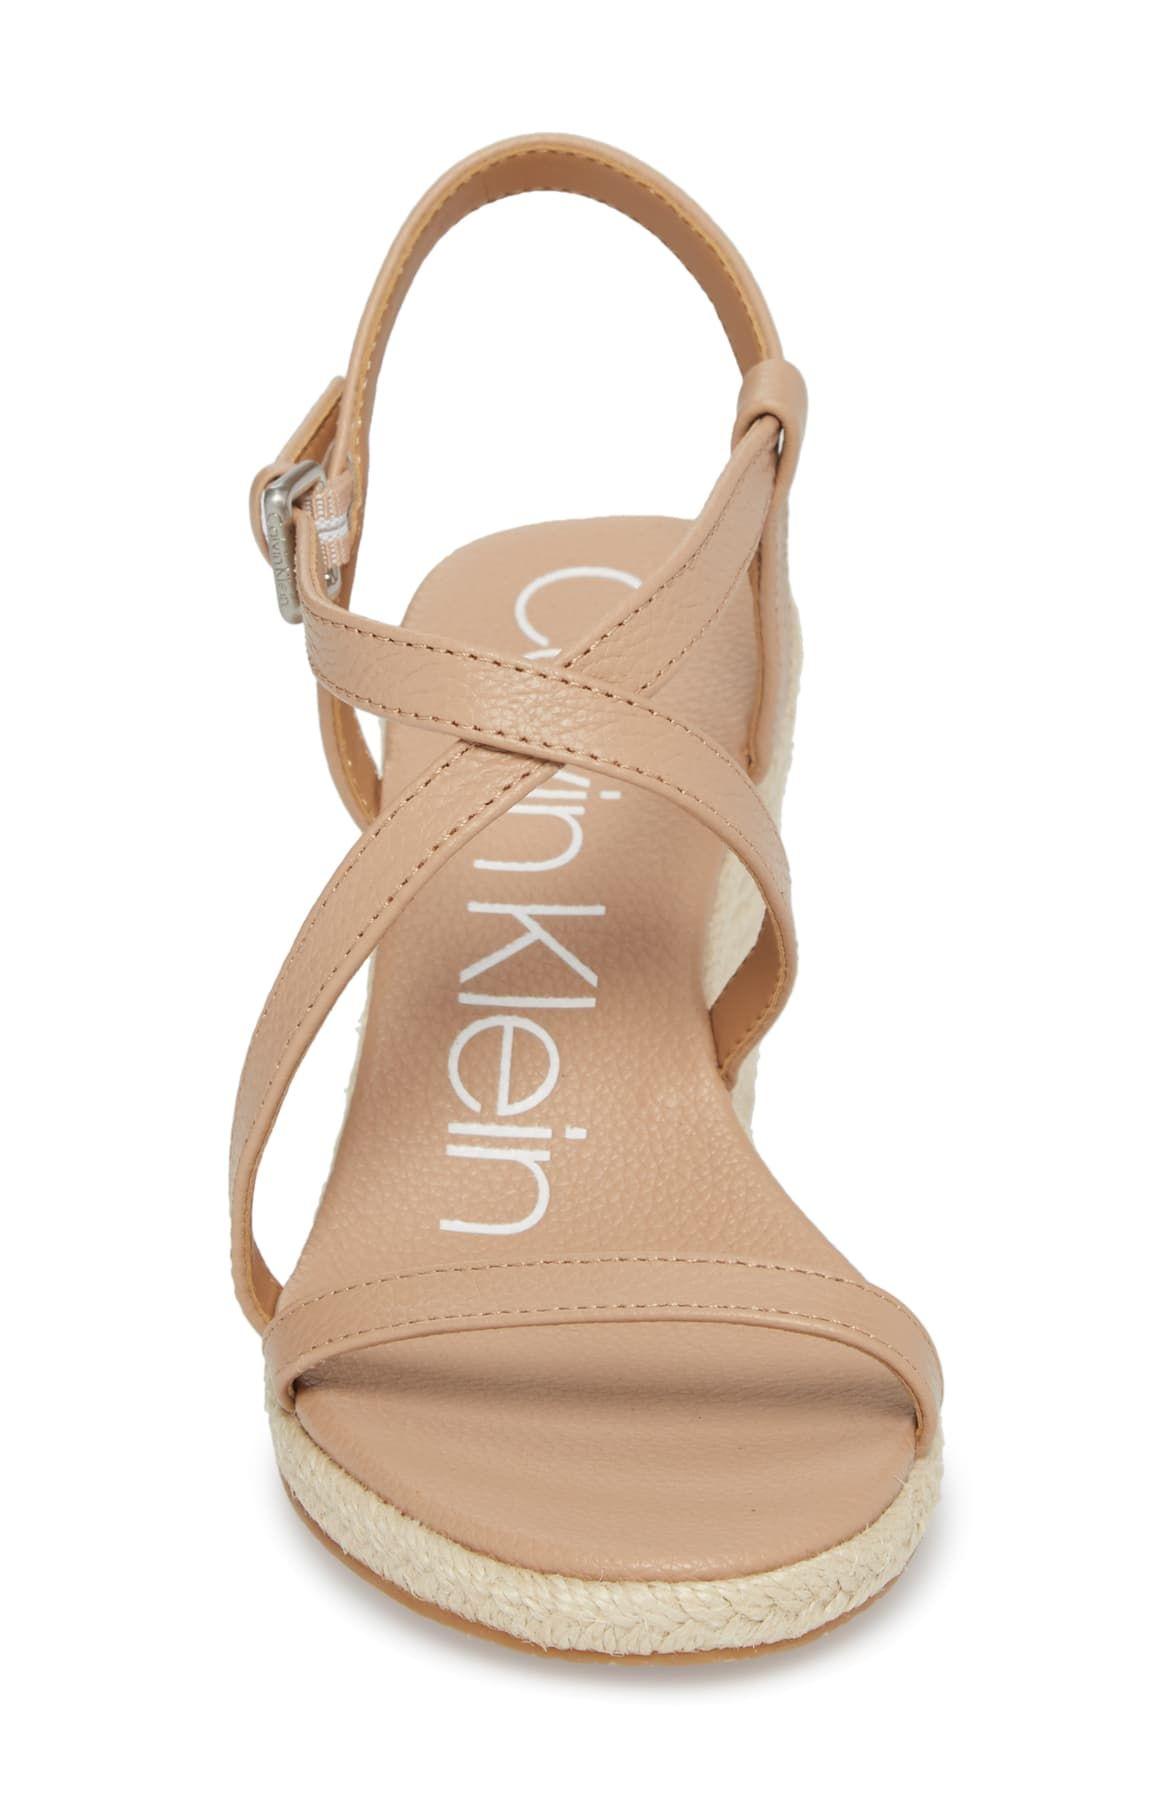 Calvin Klein Bellemine Espadrille Wedge Sandals in Natural | Lyst